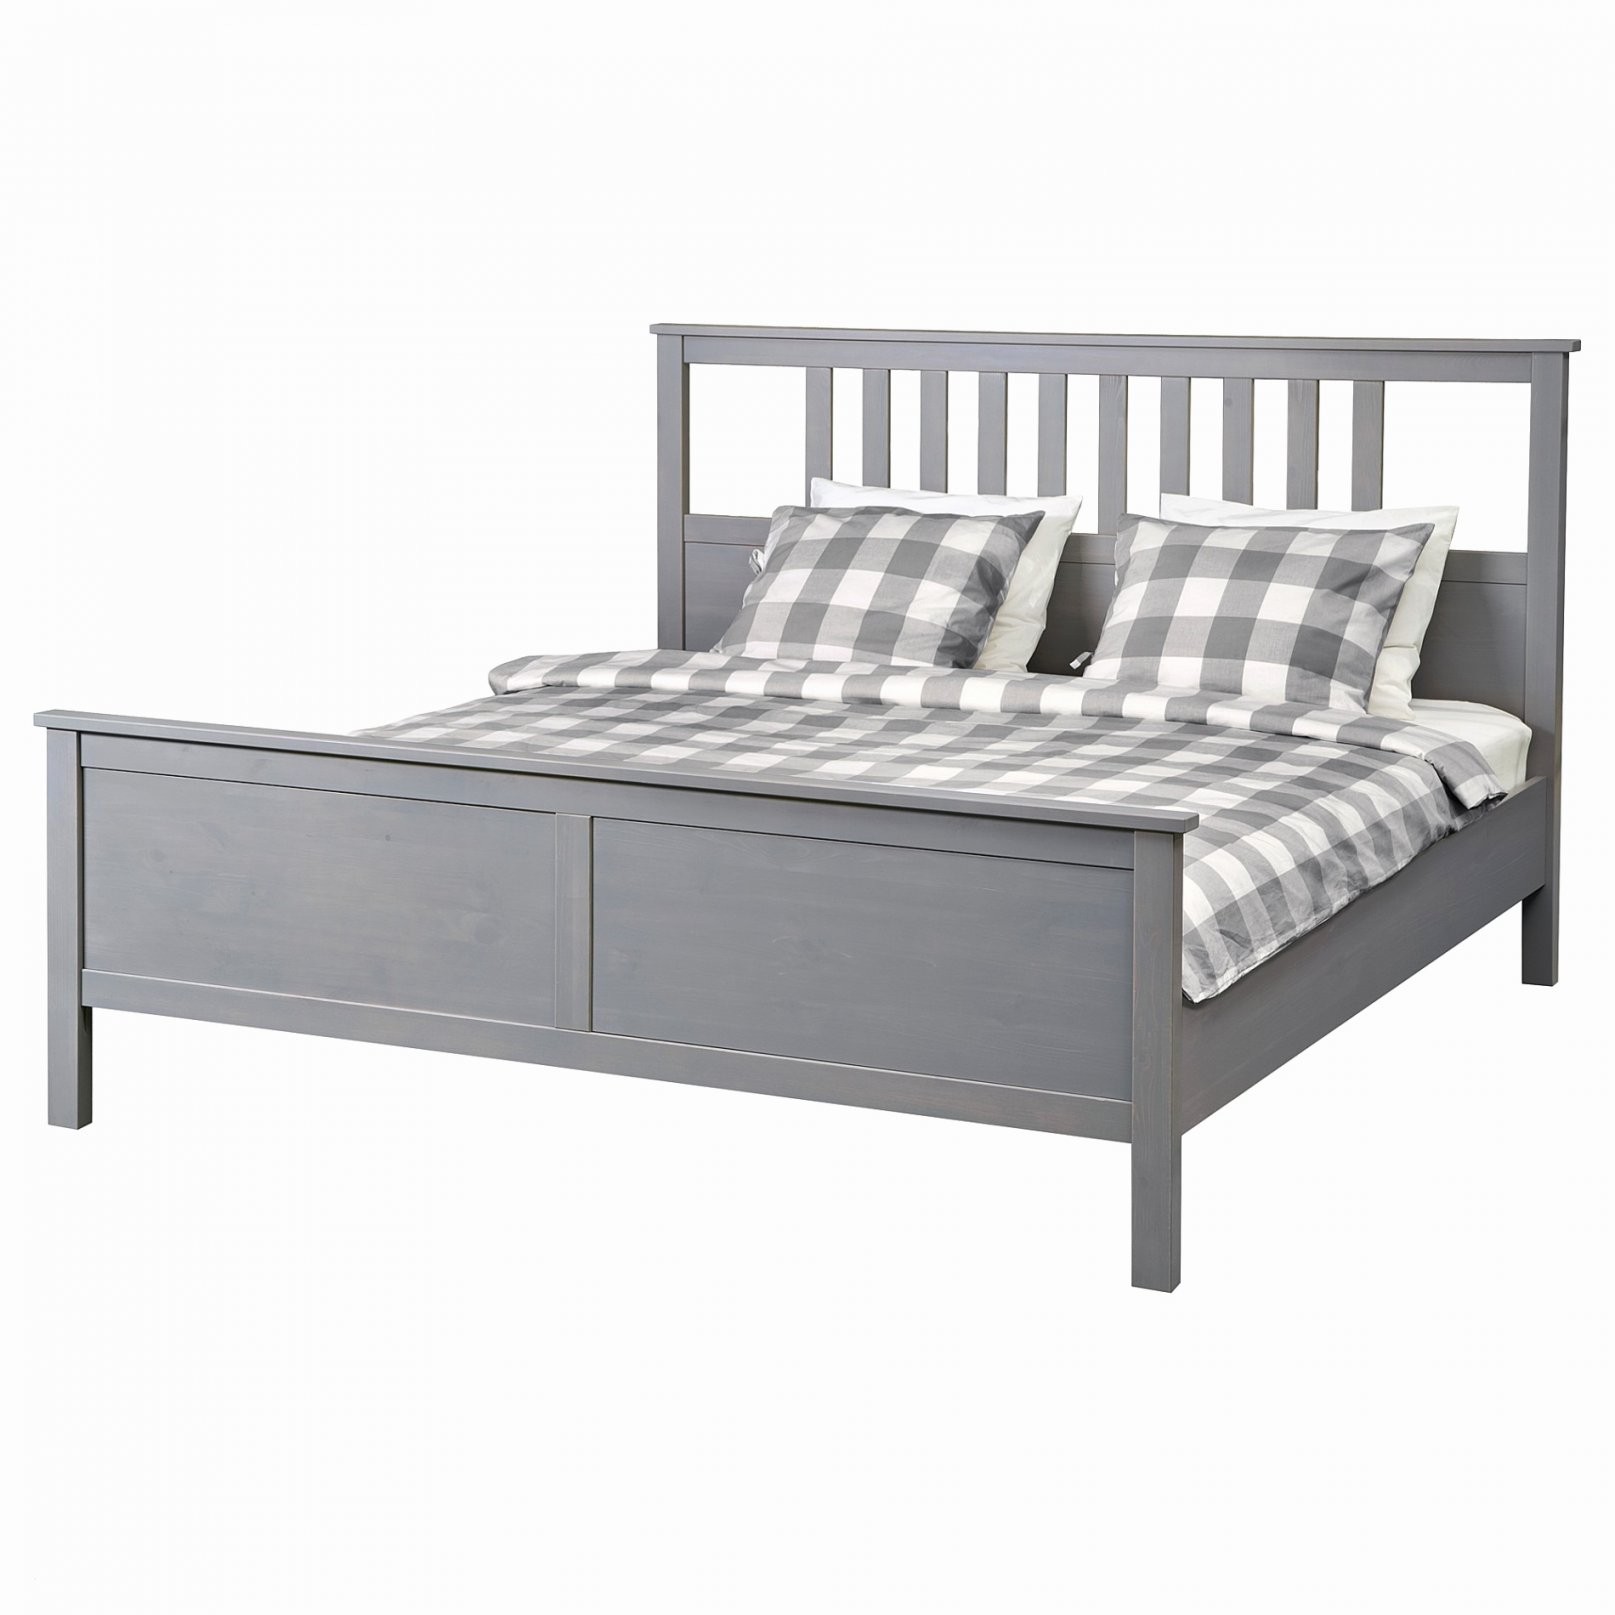 Bett 140×200 Gebraucht Luxuriös Betten Kaufen 140—200 Ausgezeichnet von Bettgestell 140X200 Gebraucht Bild